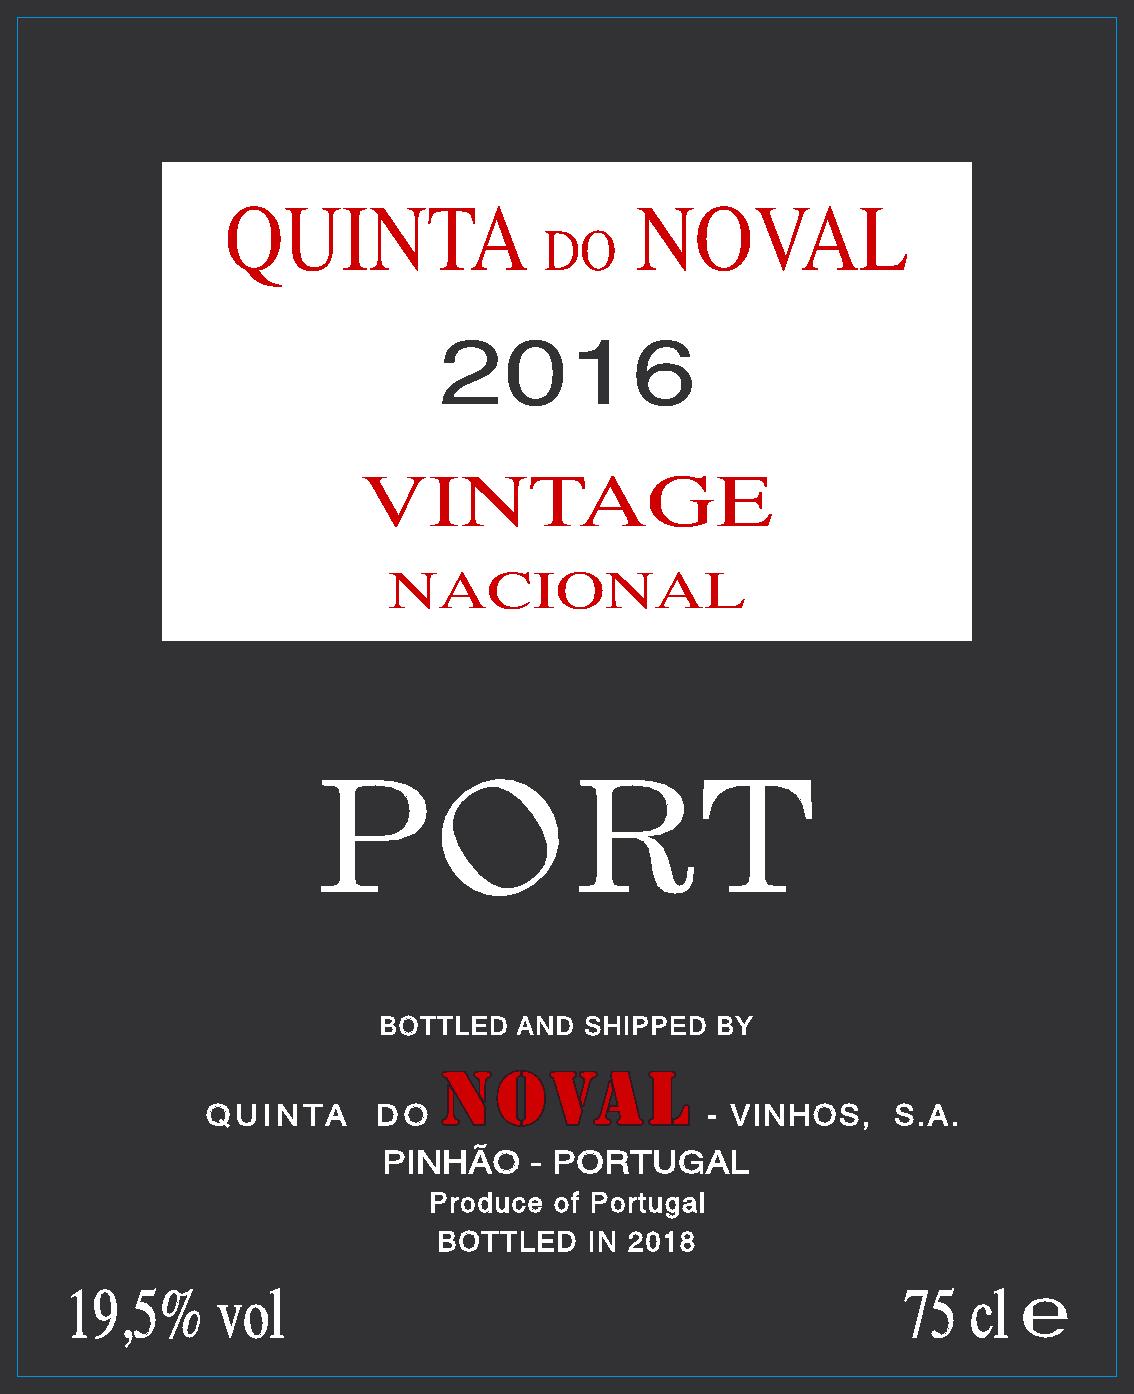 Etiquette_QDN_Nacional_Vintage_Port_2016